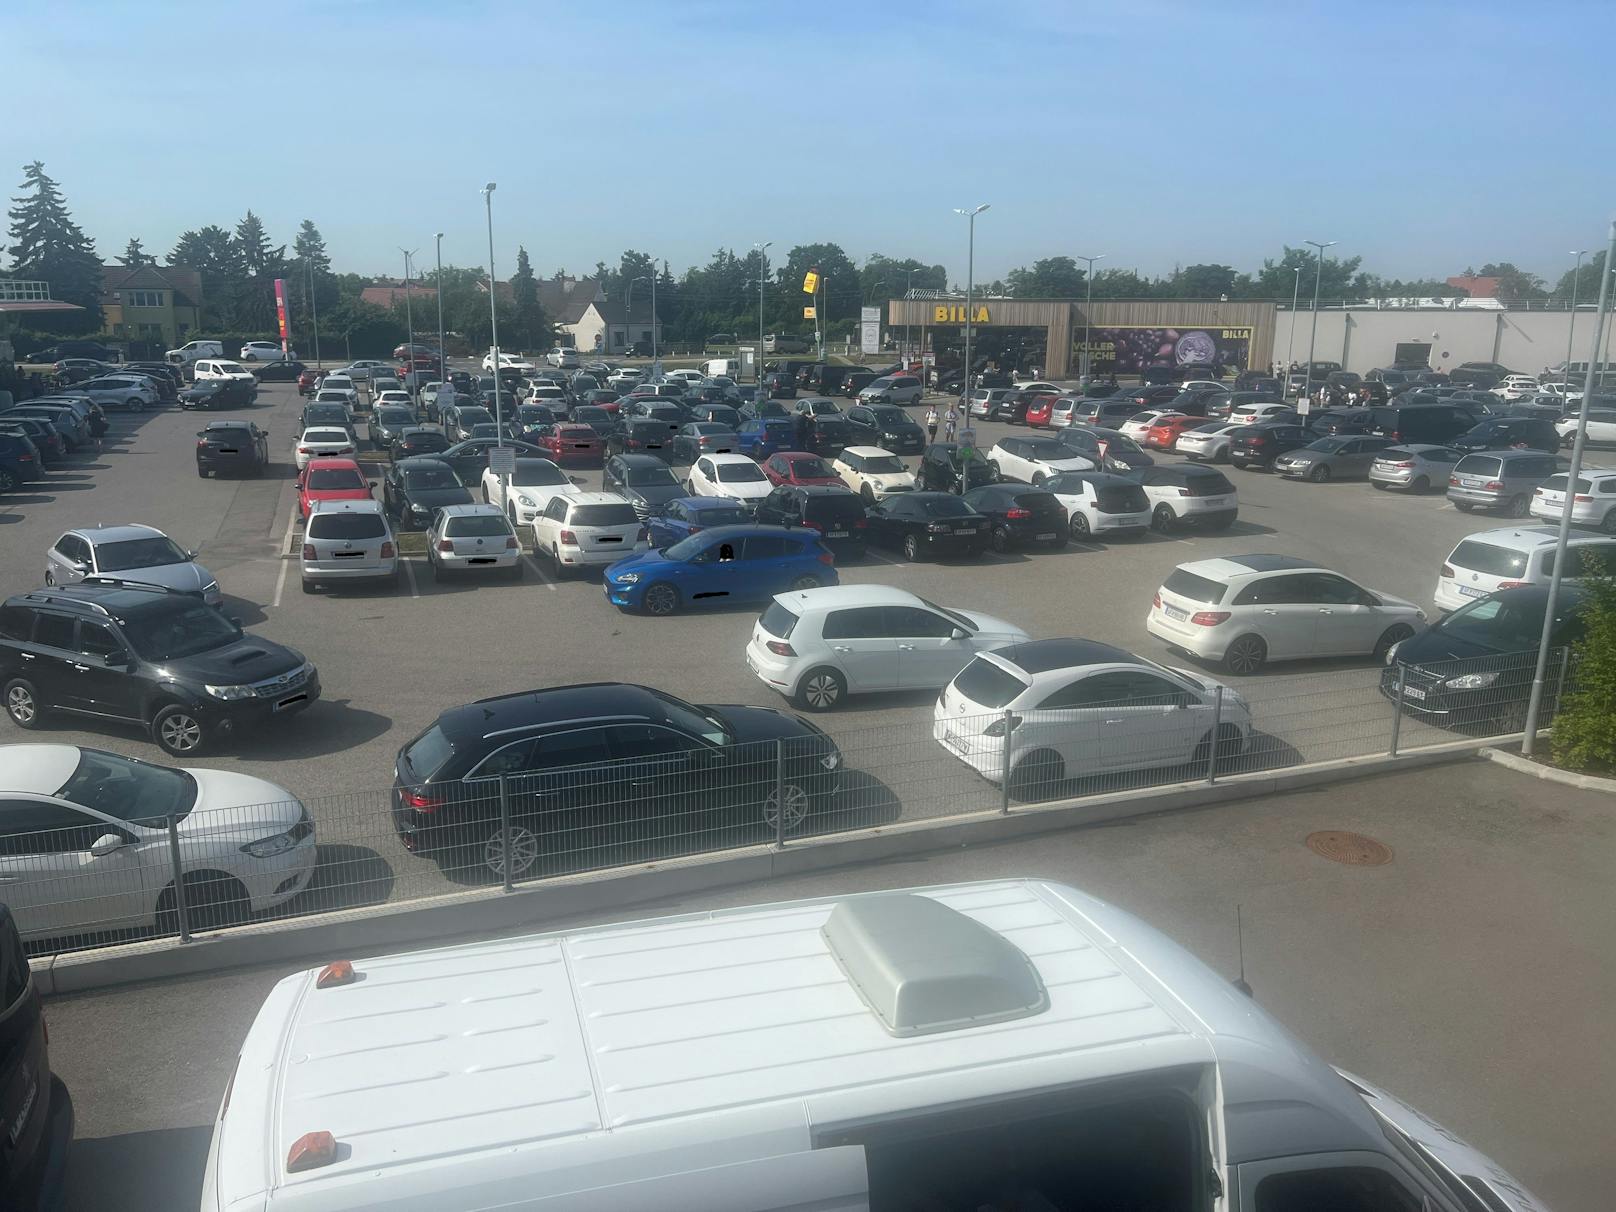 Parkplatz-Chaos! Eltern als Taxis für Schüler unterwegs